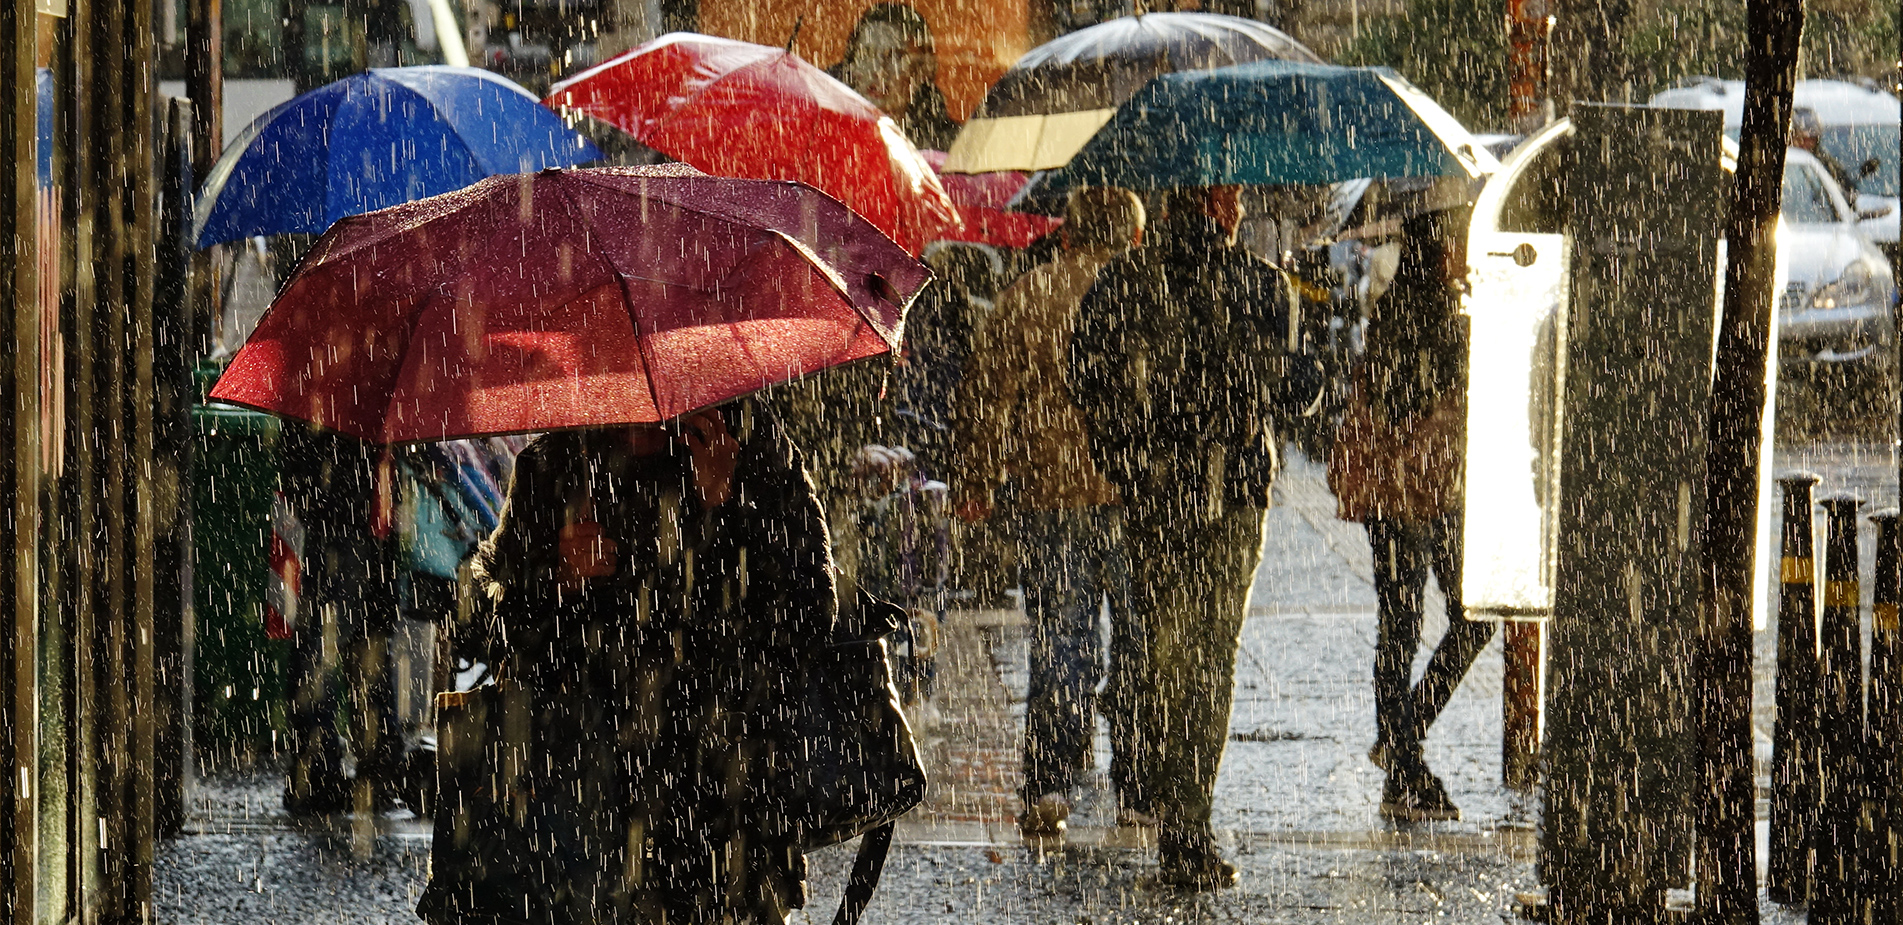 Πώς ο καιρός επηρεάζει την υγεία μας: Τι συμβαίνει στο σώμα μας και γιατί η βροχή φέρνει πόνο